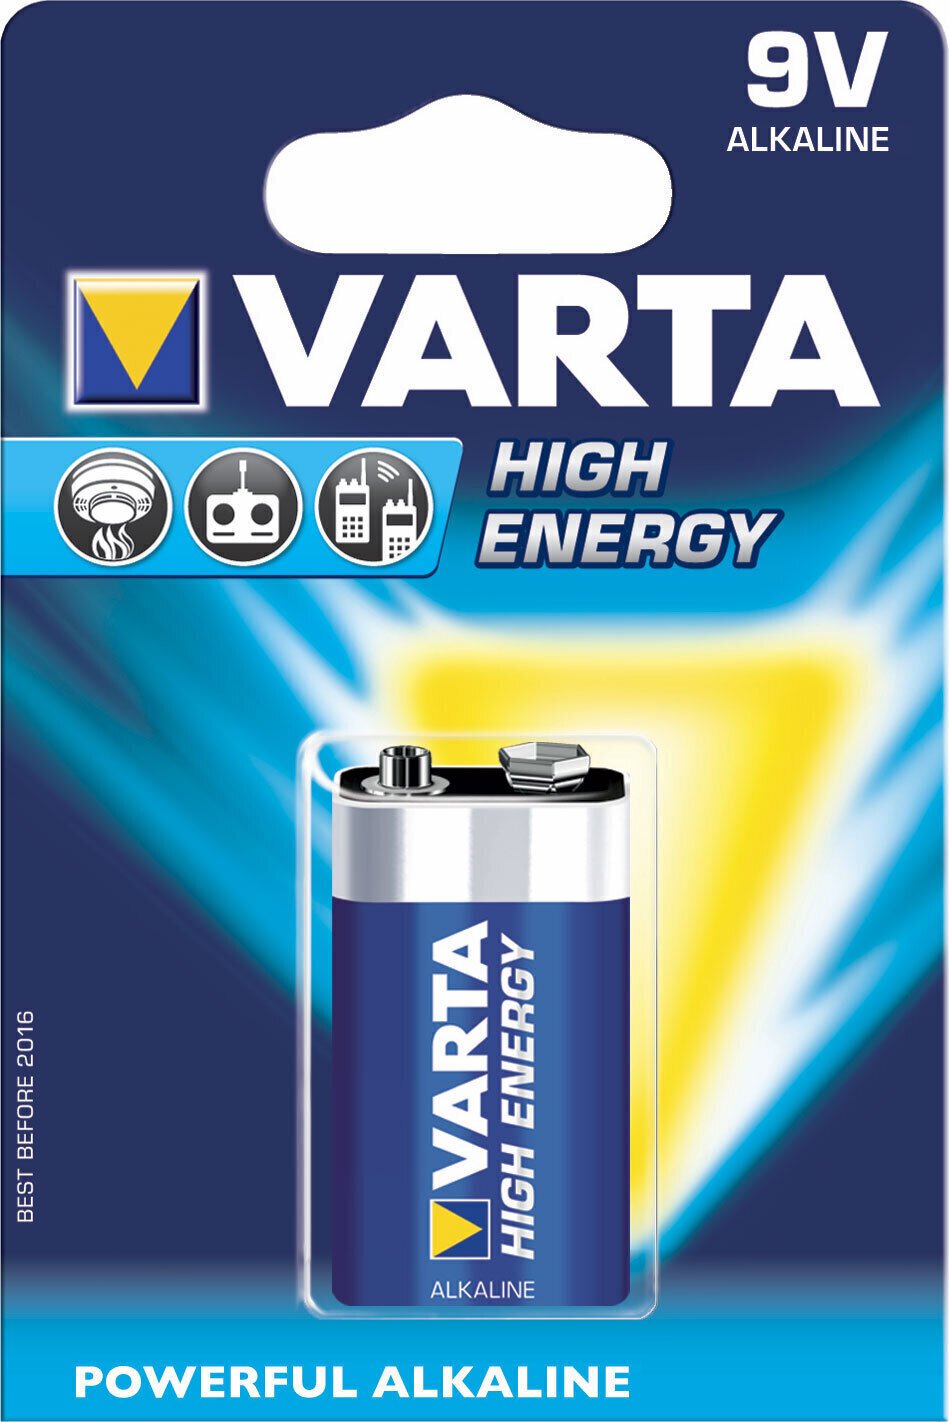 9V Baterie Varta 9V Baterie 6F22 High Energy